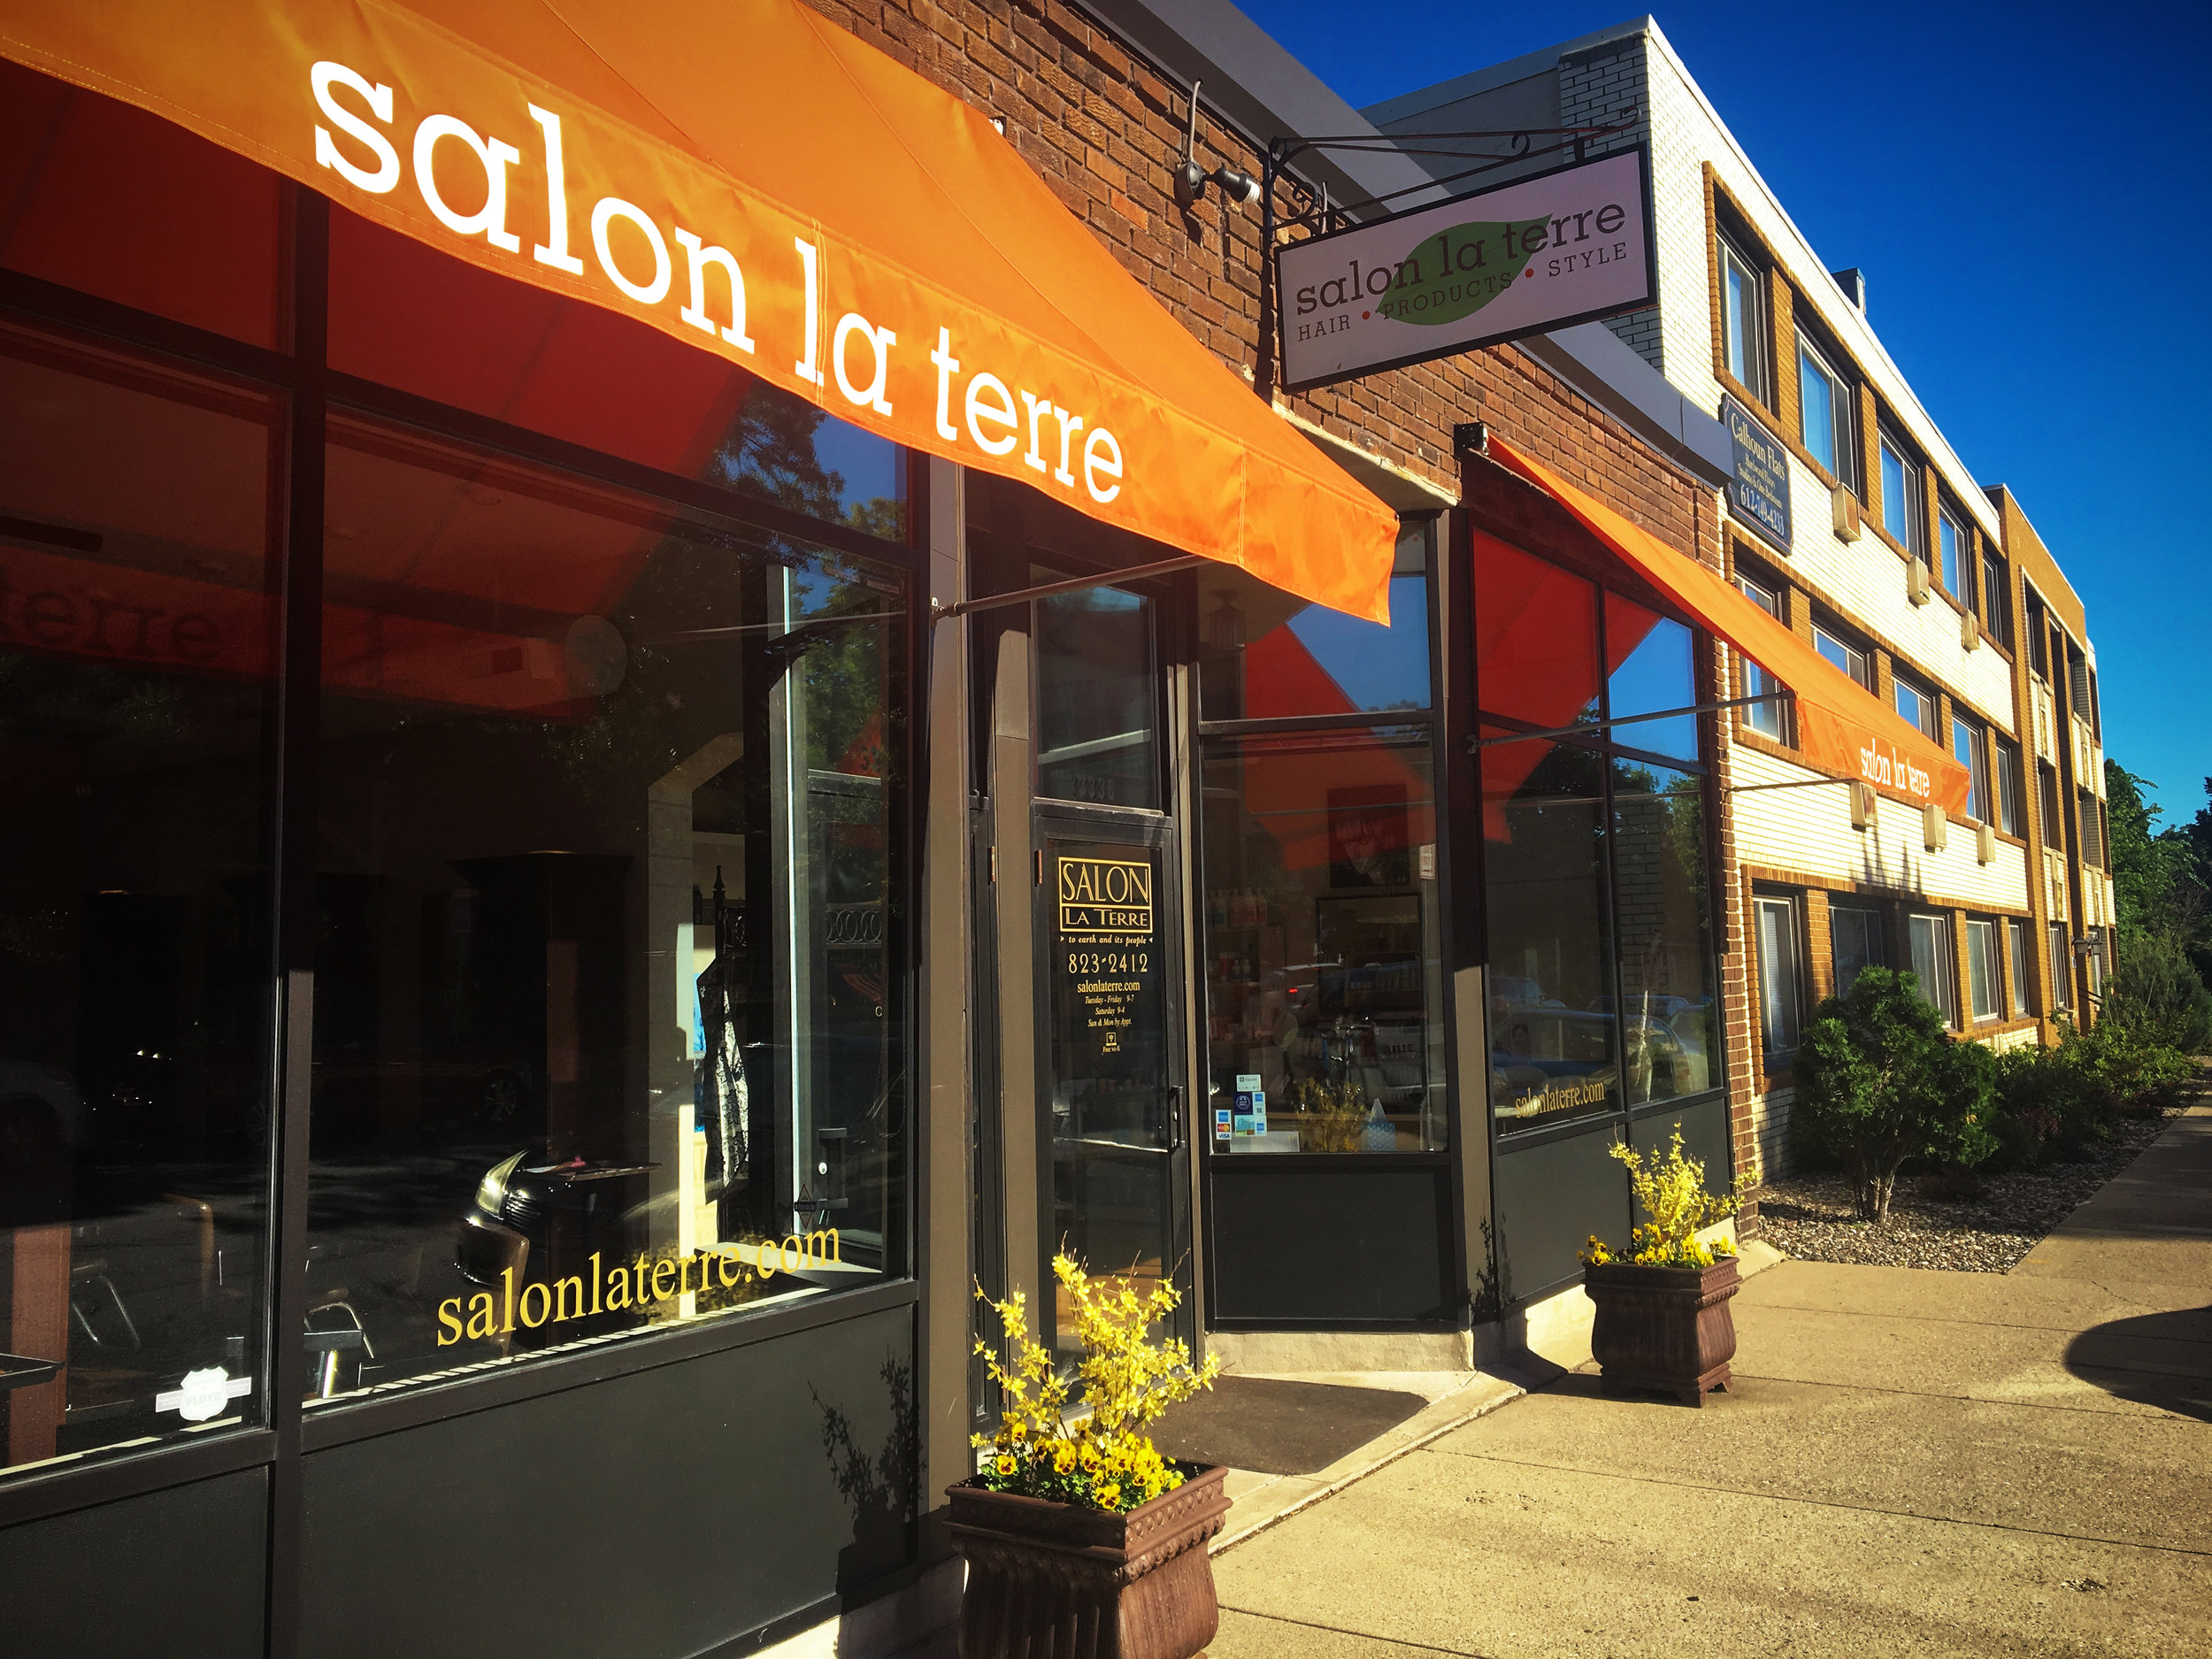 Salon La Terre outside with orange canopy